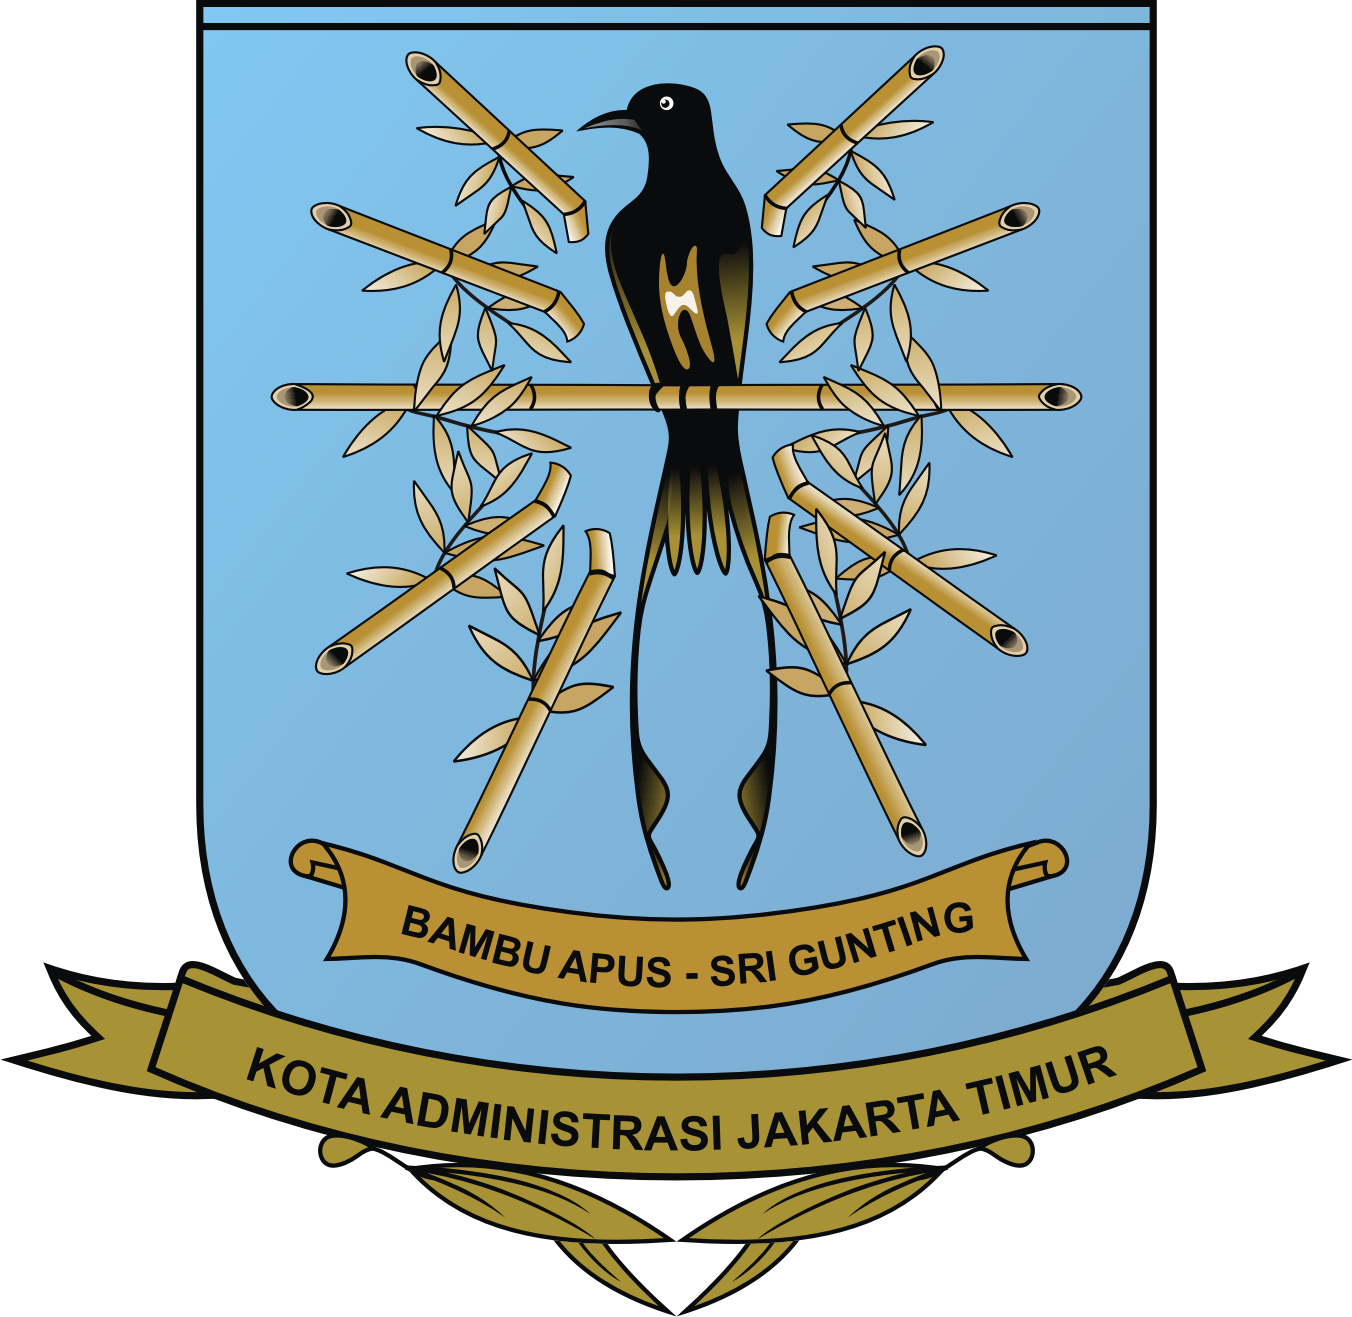 Pemerintah Kota Administrasi Jakarta Timur Logo